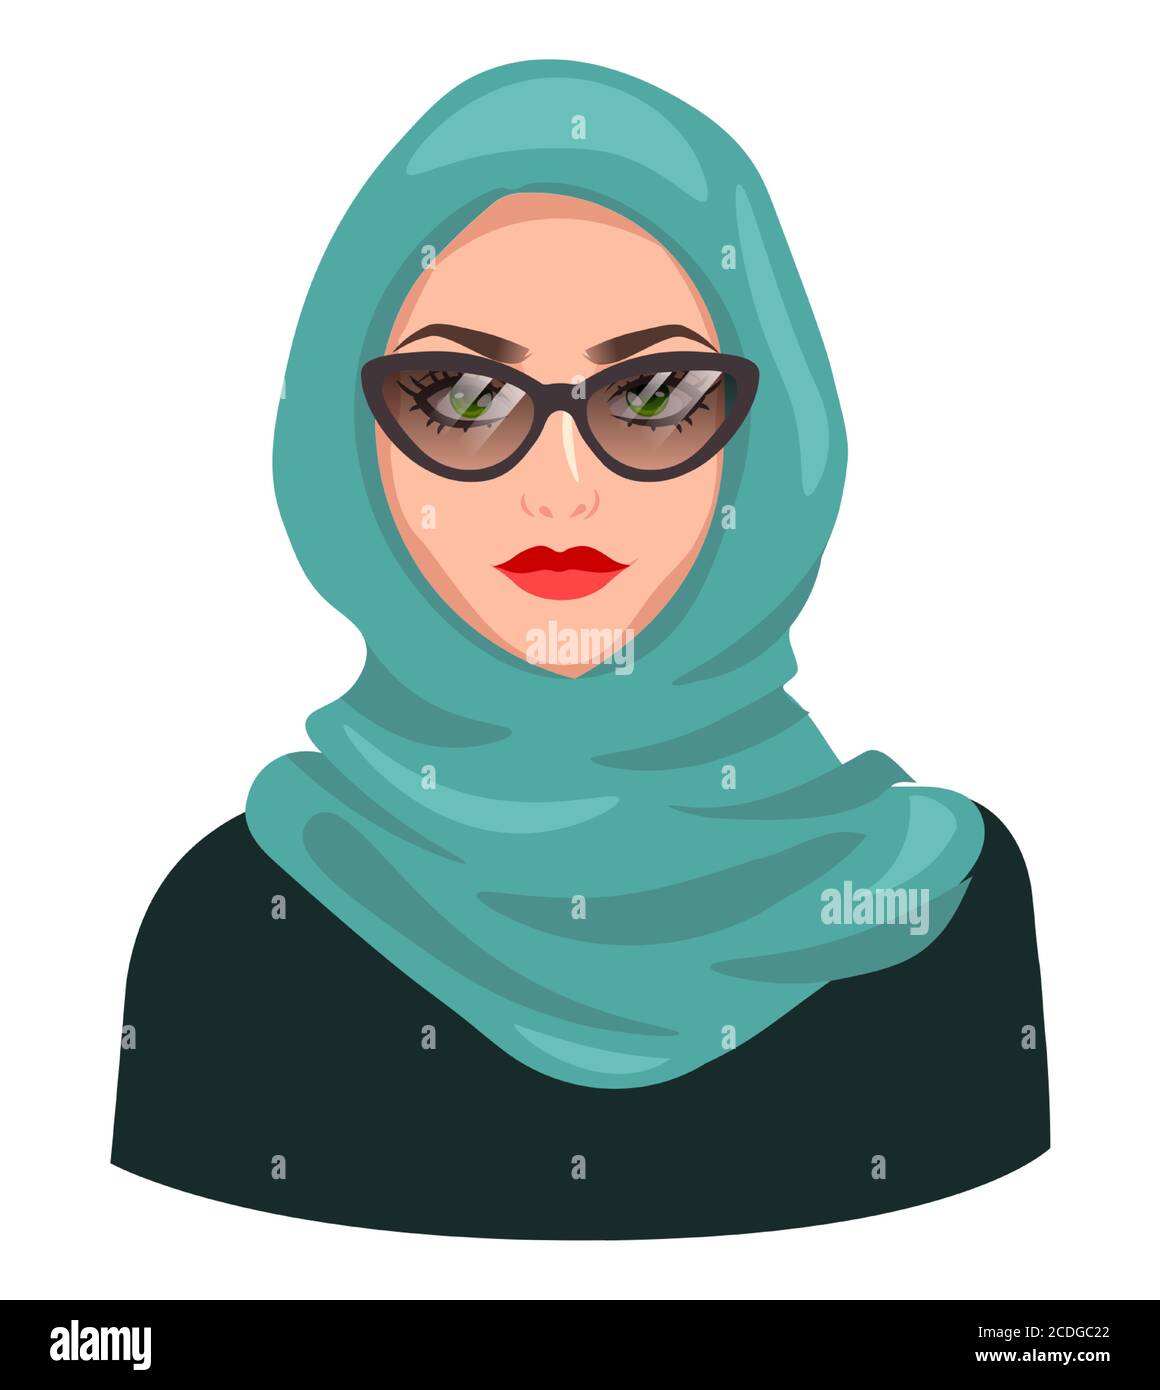 Avatar de femme musulmane, isolé sur blanc. Jeune fille arabe portant le  hijab et des lunettes de soleil. Dessin animé portrait de femme,  illustration vectorielle plate Image Vectorielle Stock - Alamy